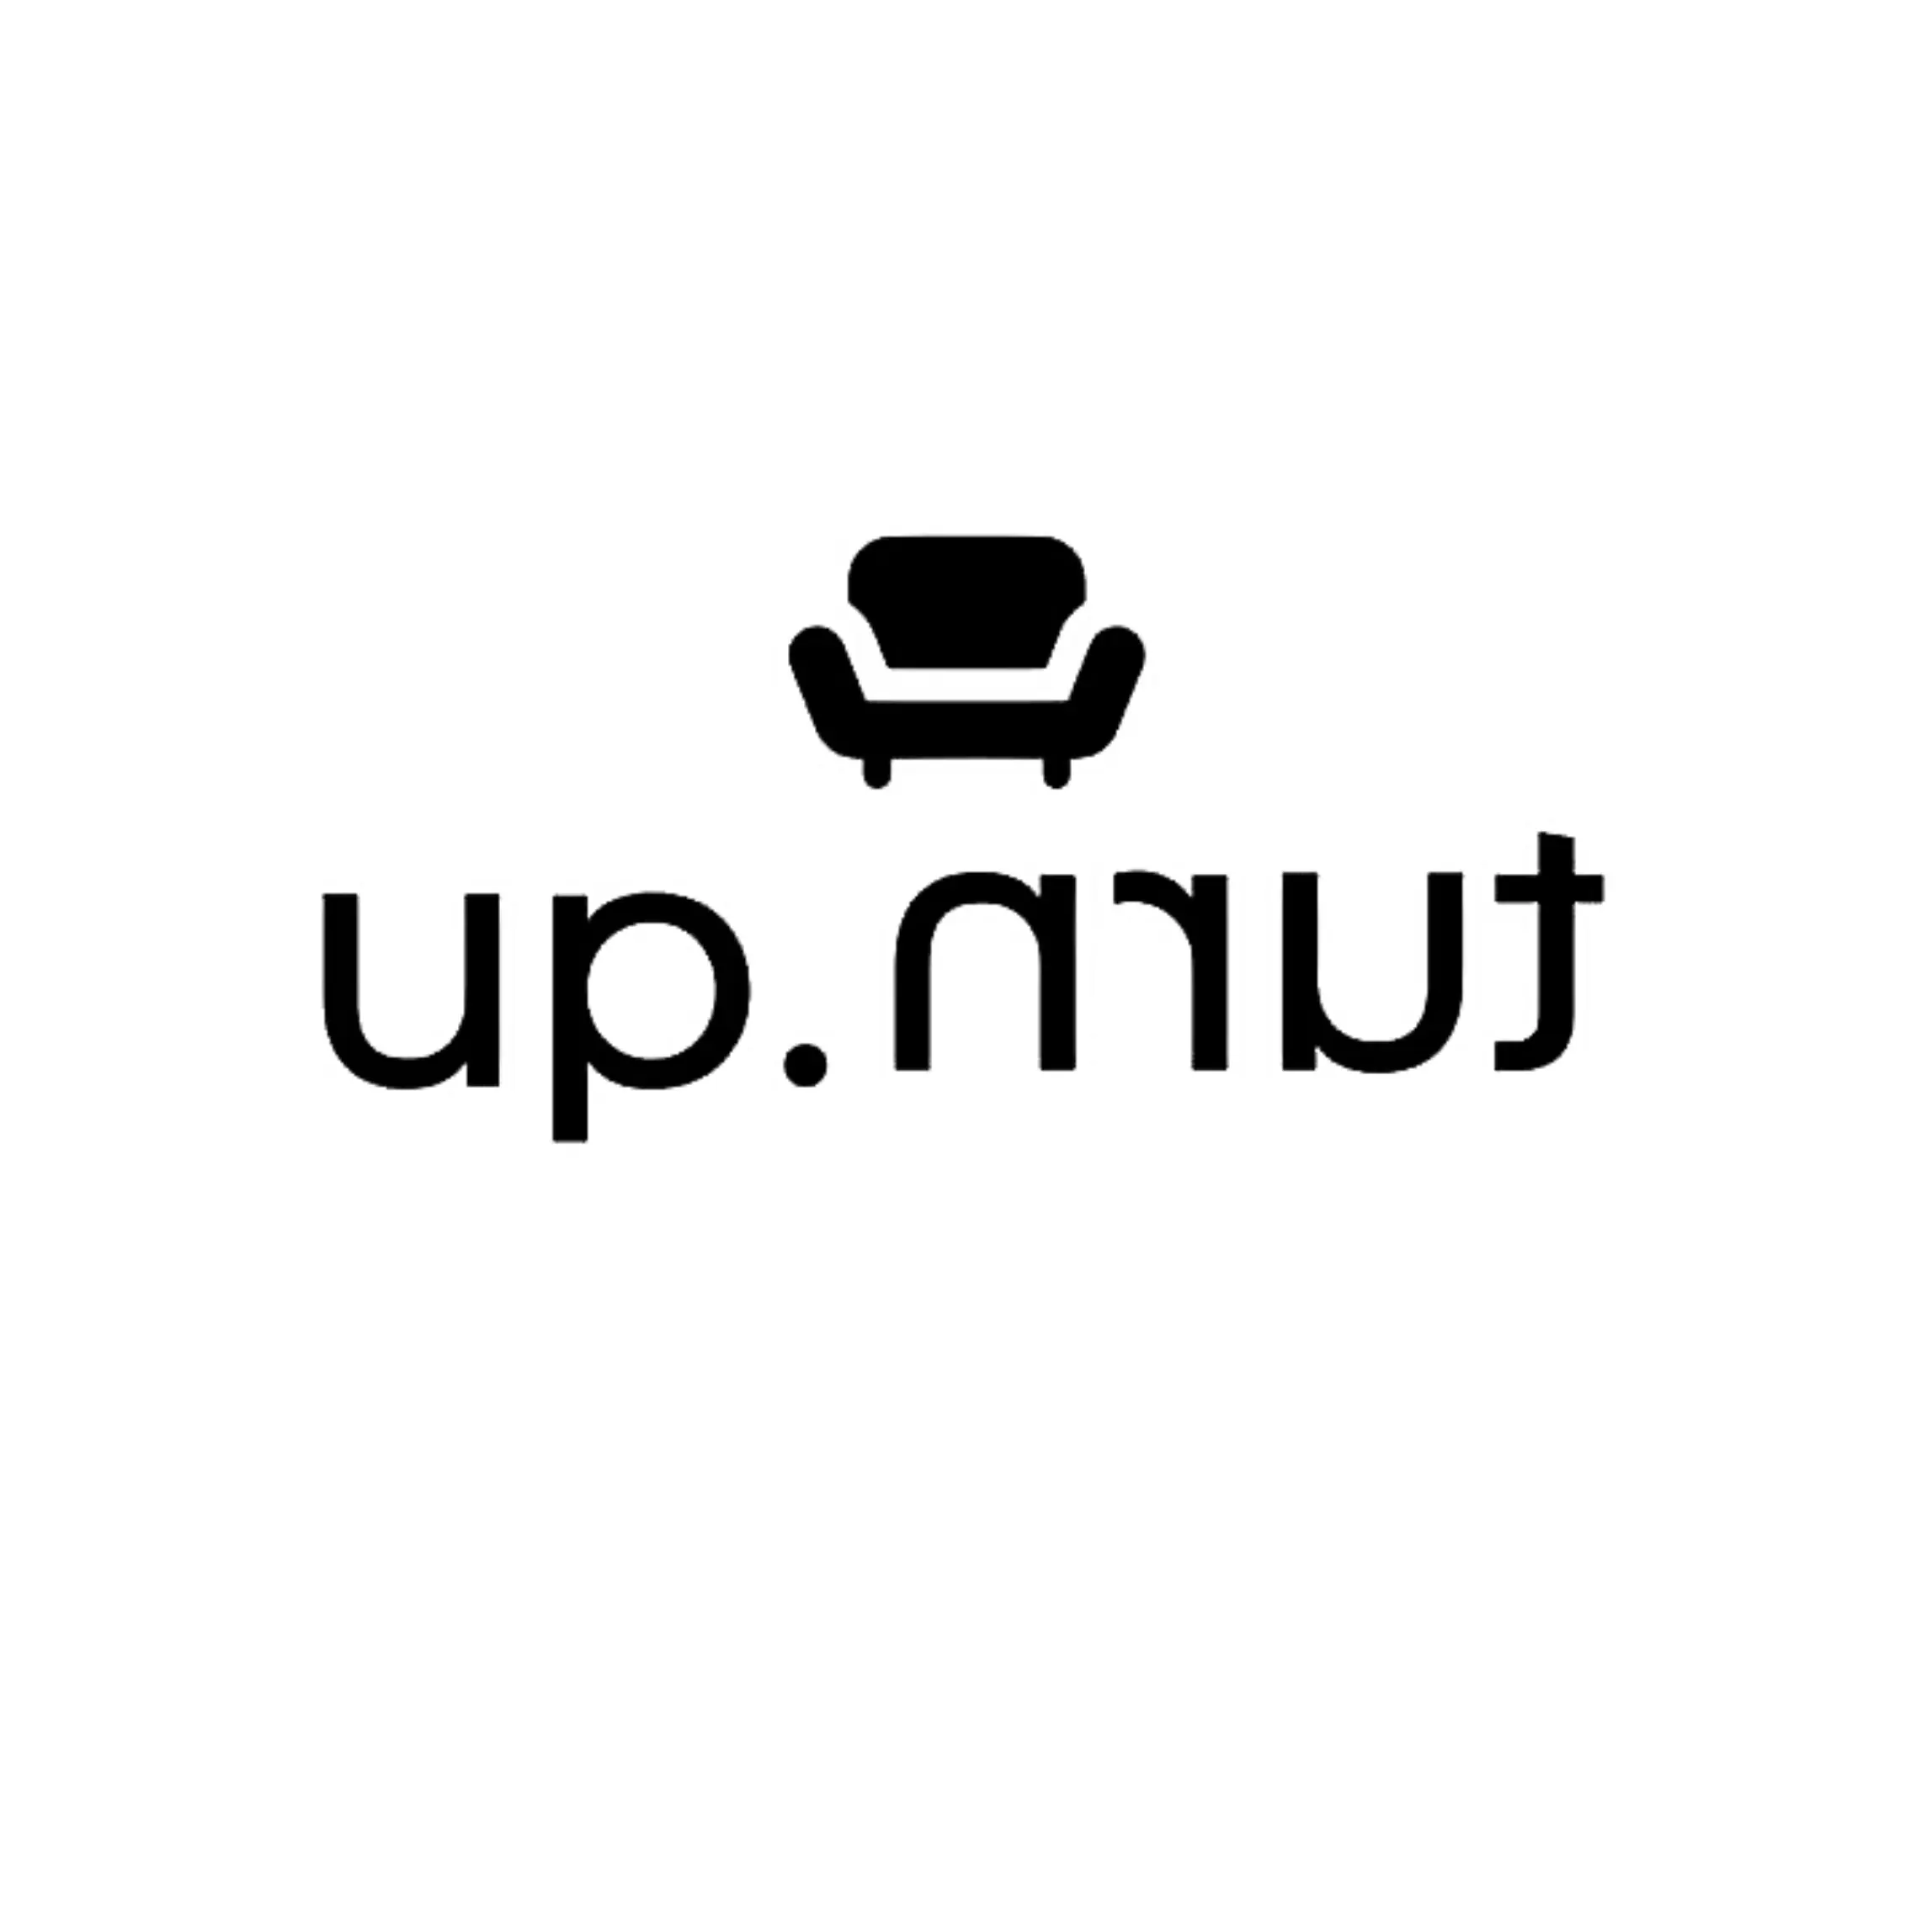 Upturn Upholstery's logo'